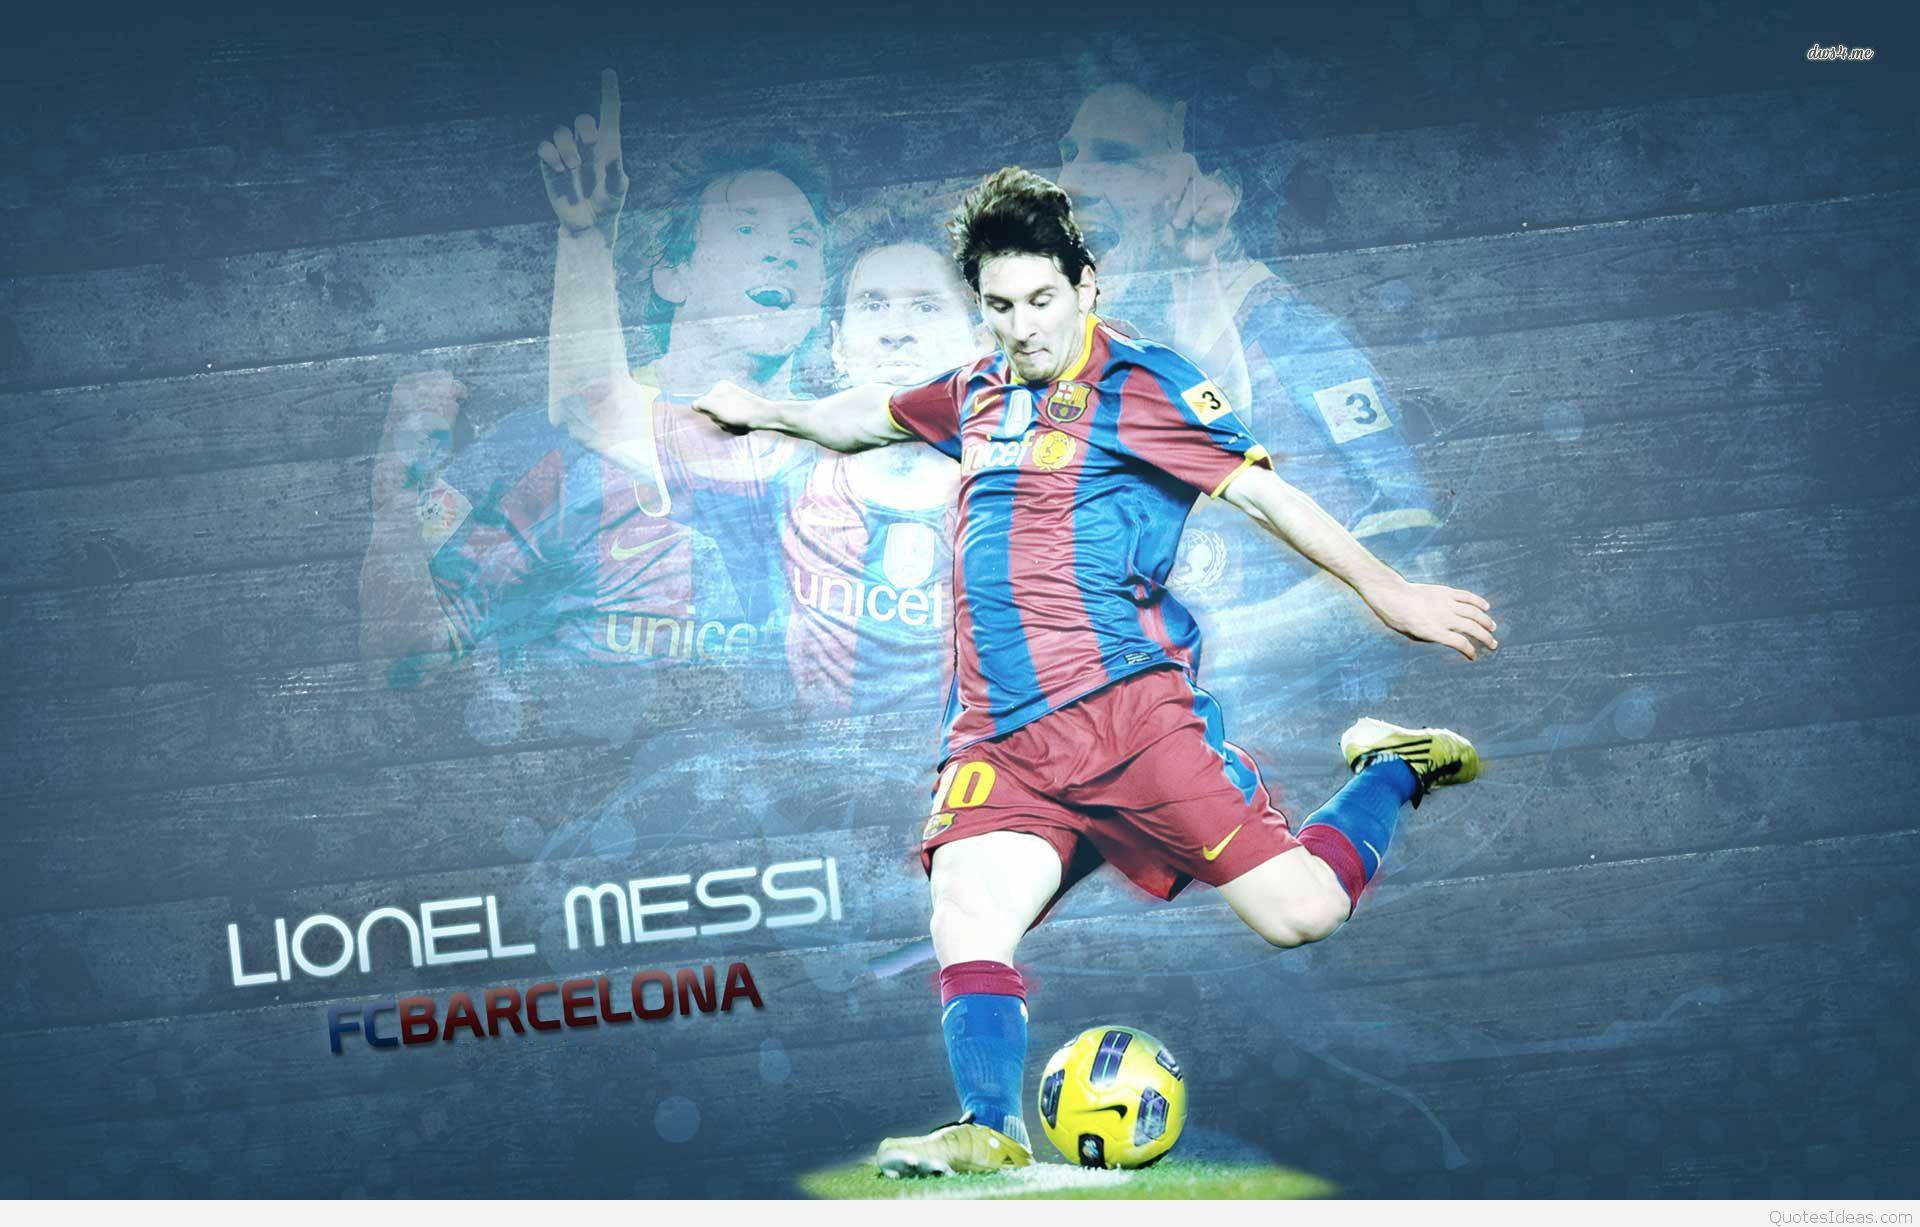 Gráficaresplandeciente De Messi En Barcelona. Fondo de pantalla